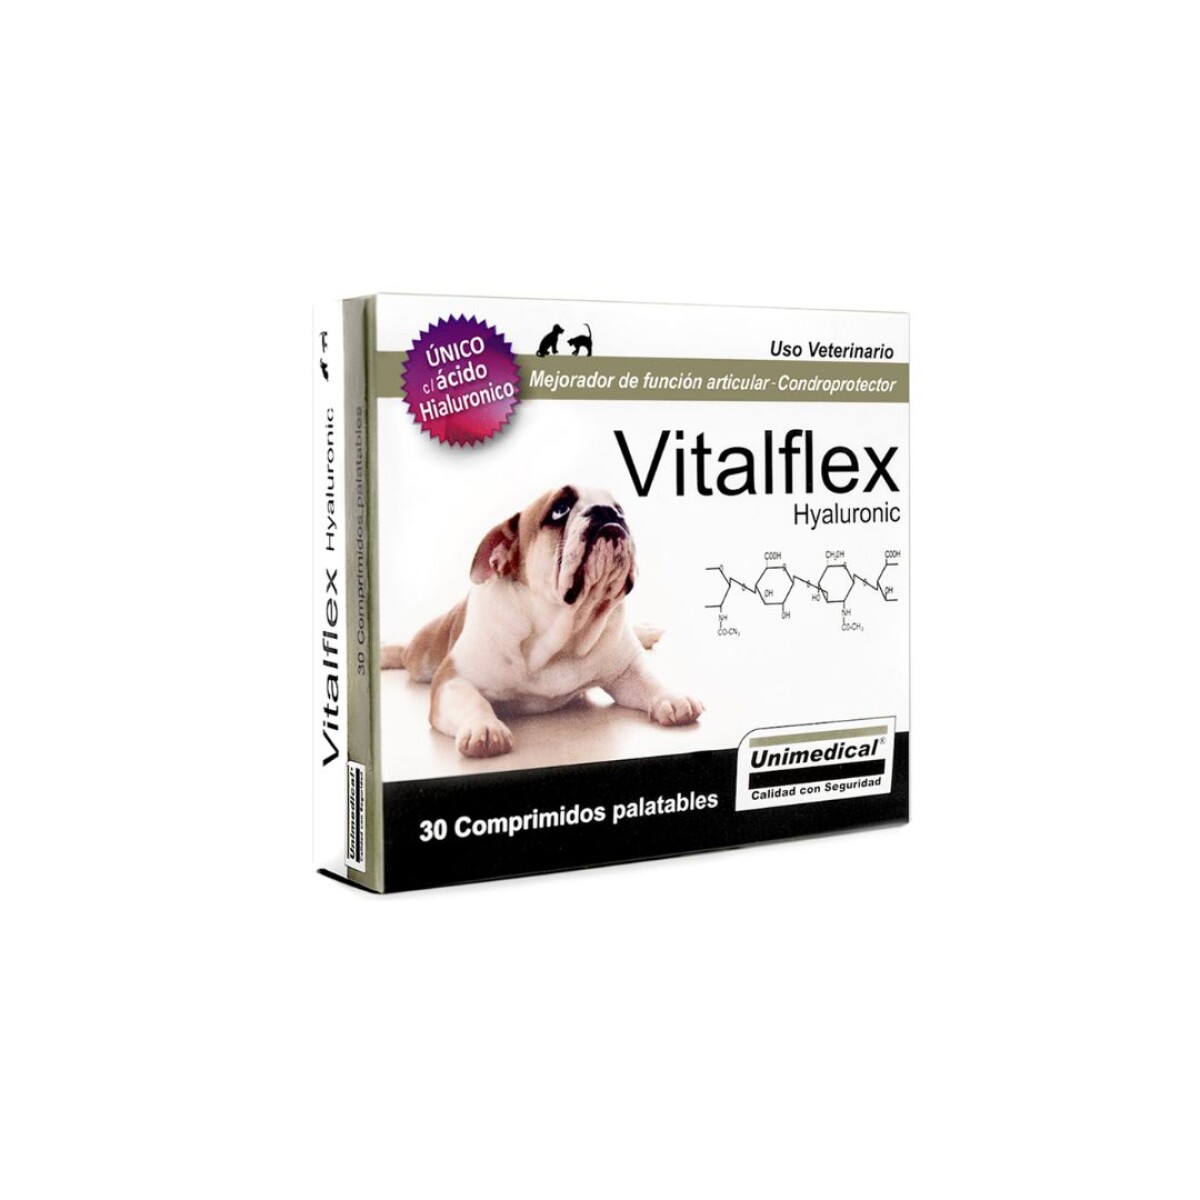 VITALFLEX (30 COMPRIMIDOS) - Unica 